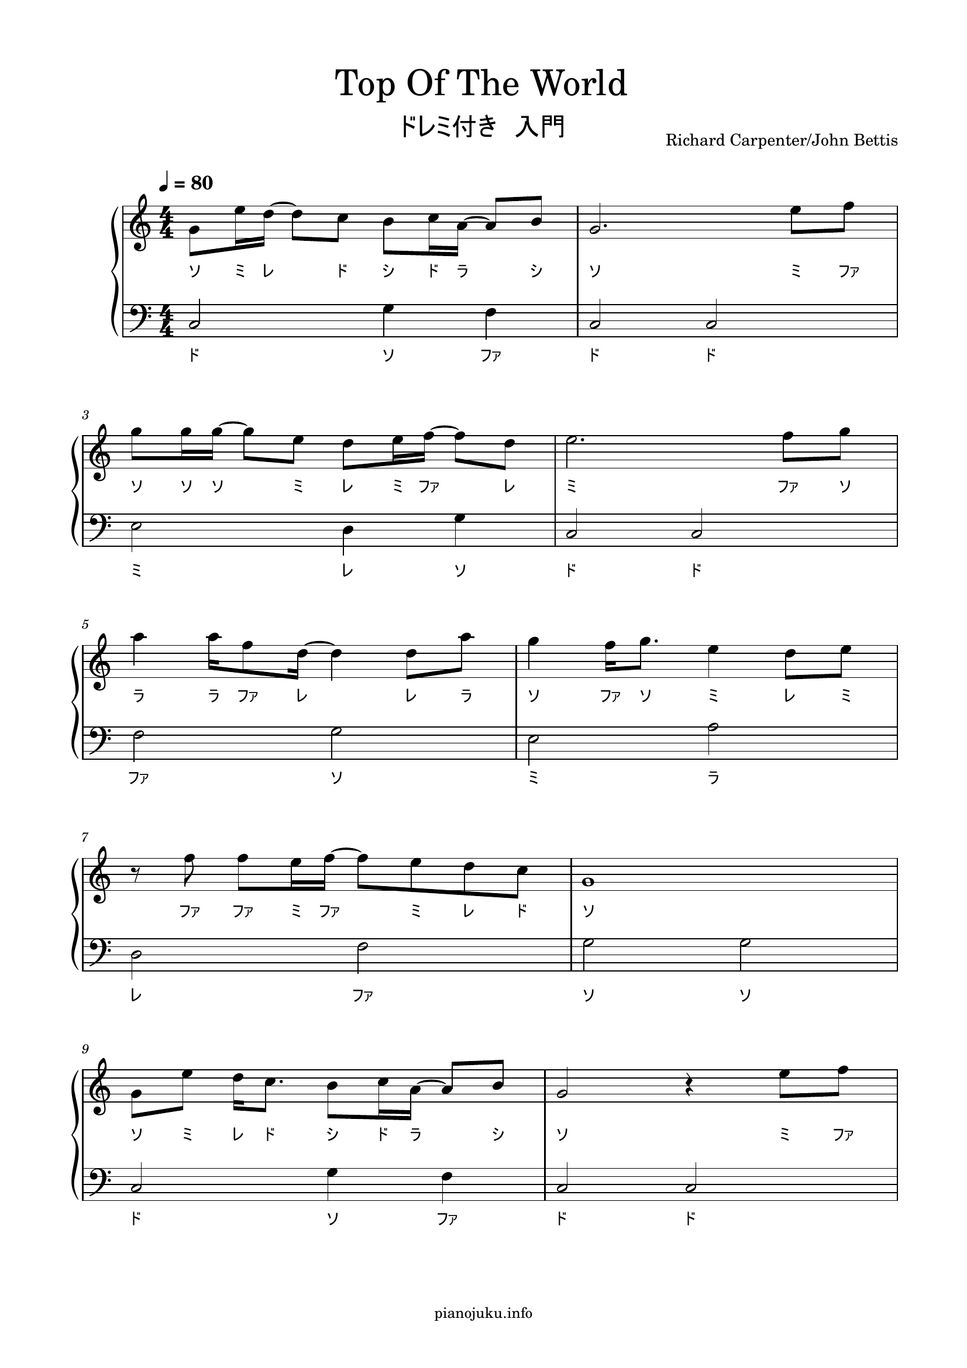 カーペンターズ - トップ・オブ・ザ・ワールド (ドレミ付き簡単楽譜) 楽譜 by ピアノ塾